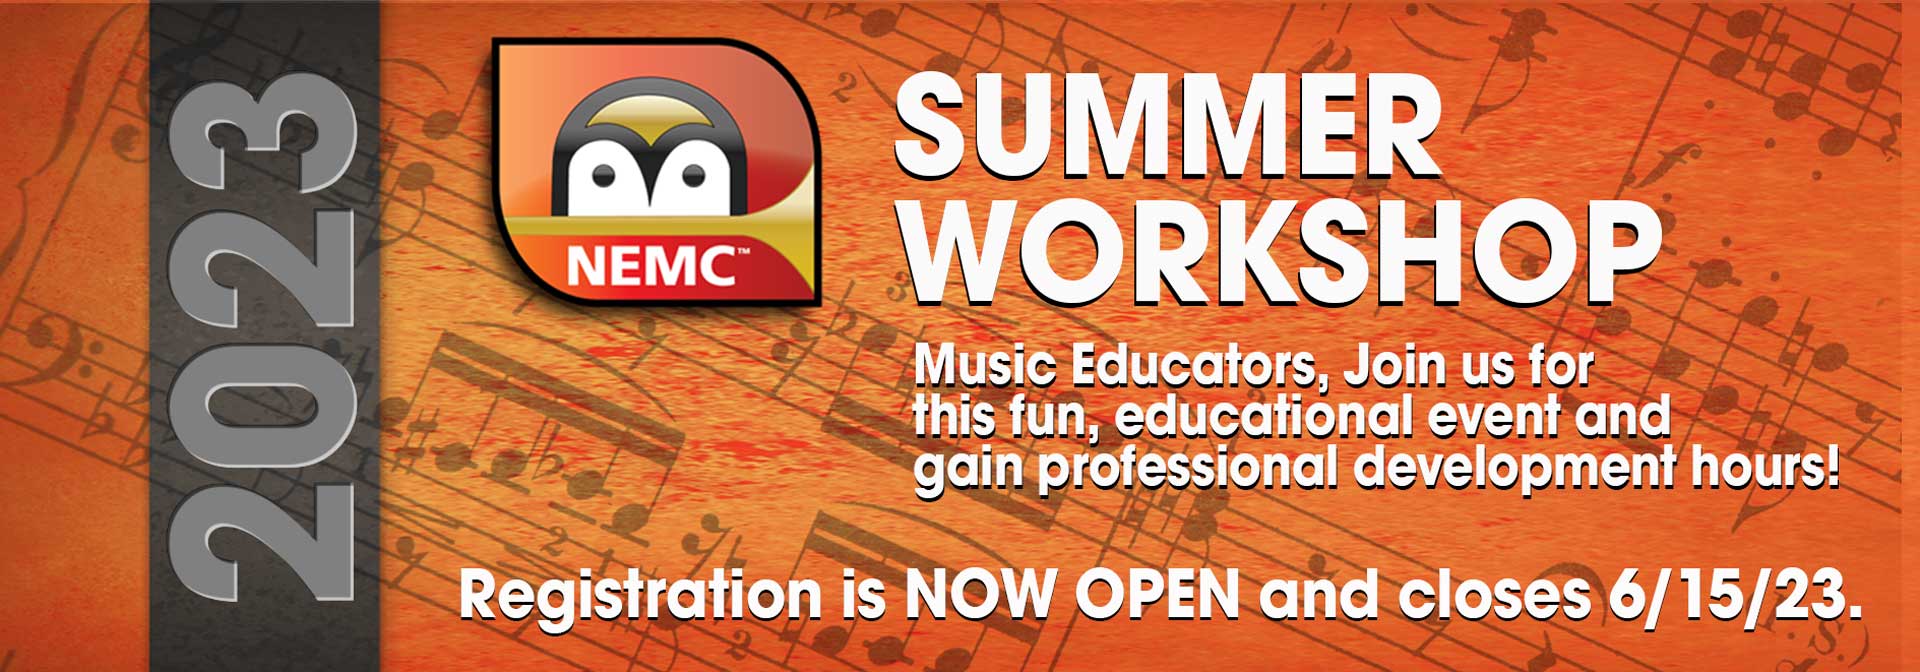 Summer Workshop Home Page Banner